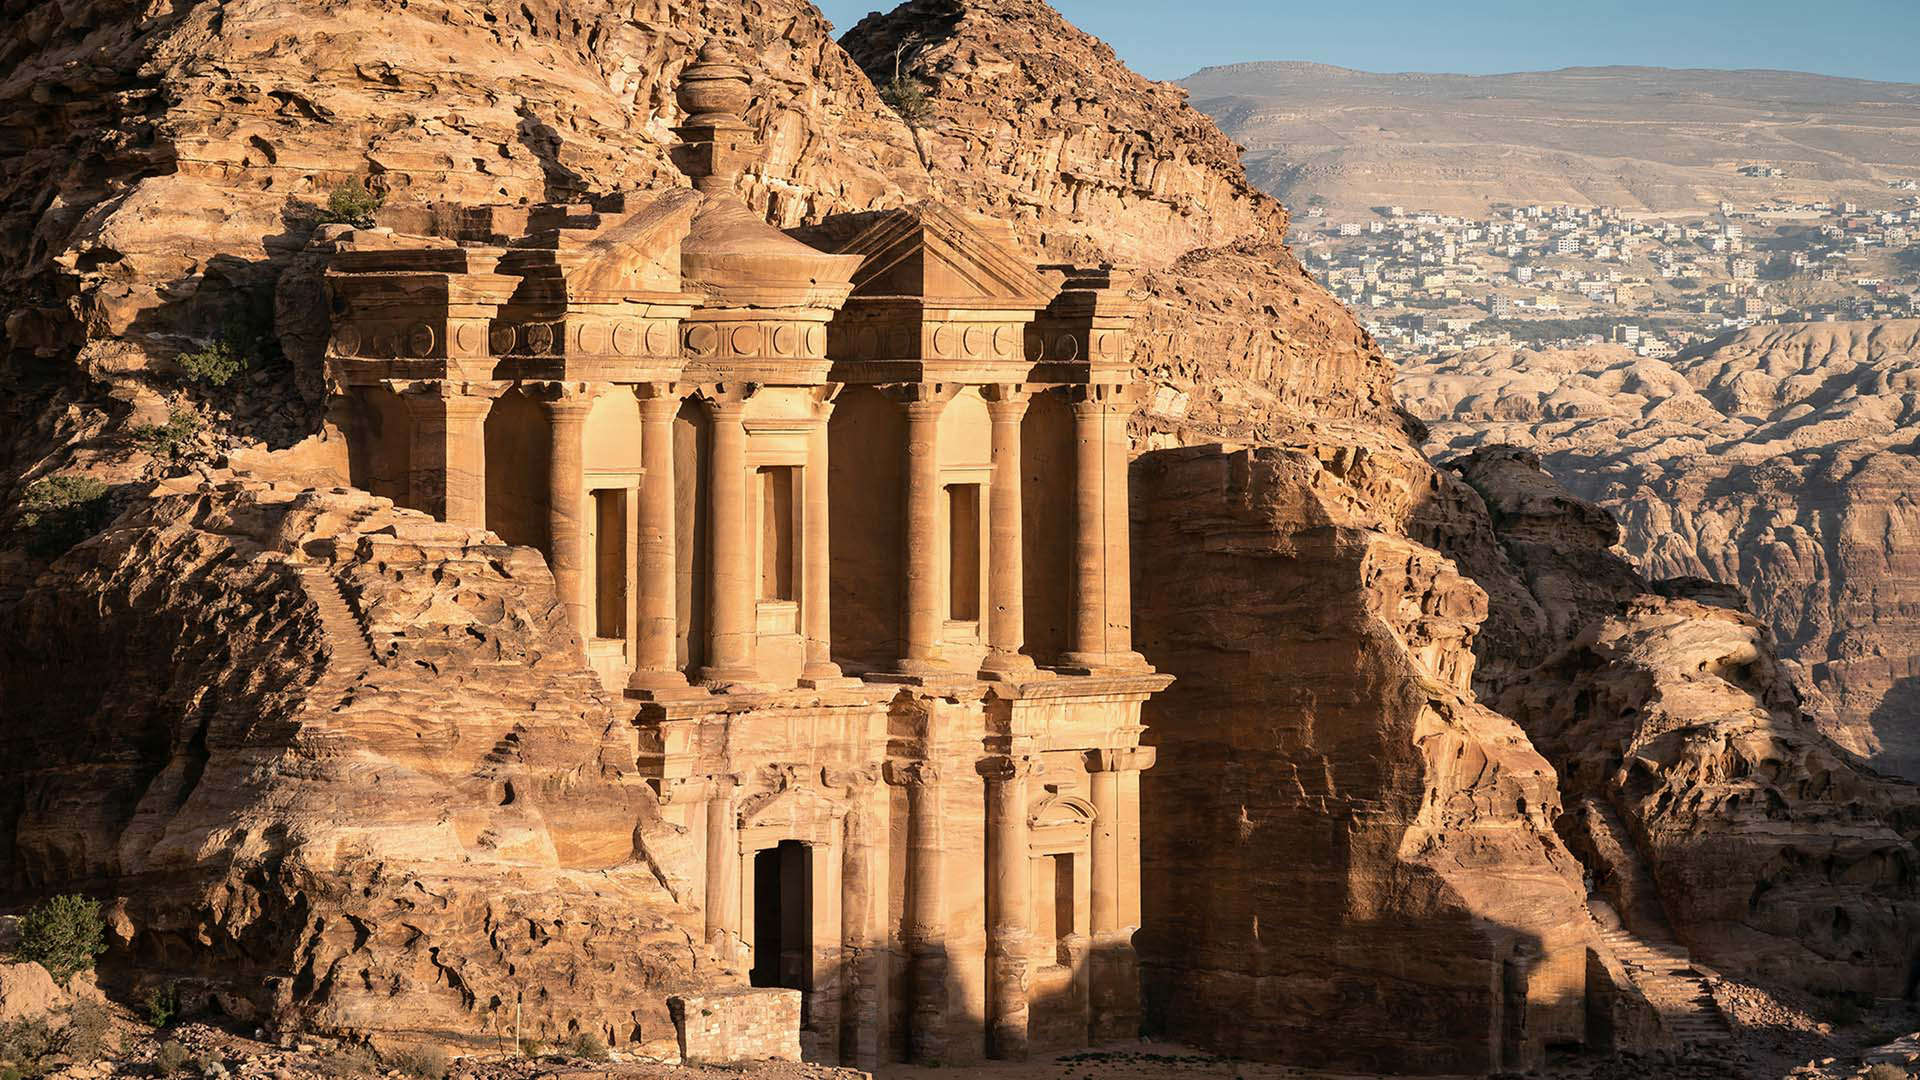 Tumbas en la Ciudad Perdida de Petra, Jordania